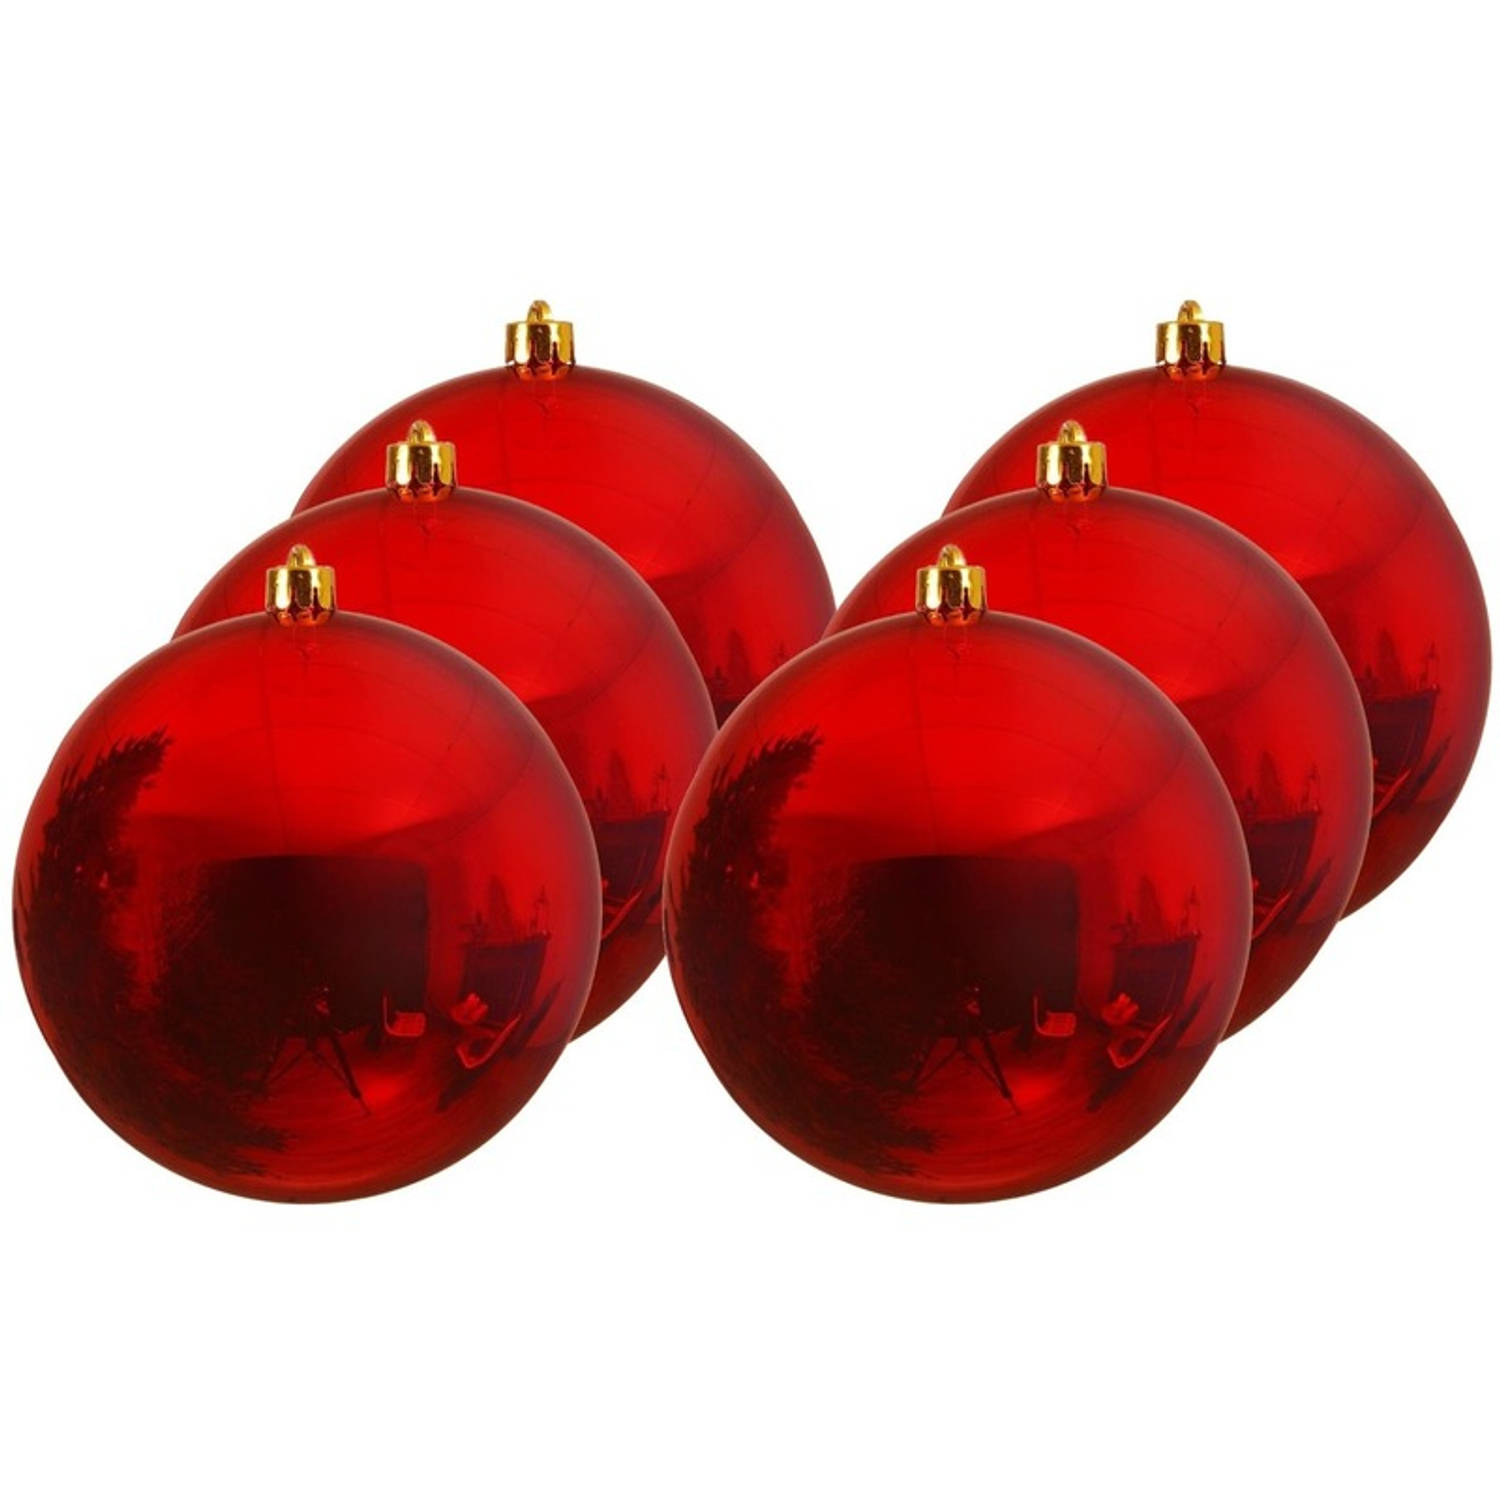 6x Grote Kerst Rode Kunststof Kerstballen Van 20 Cm Glans Rode Kerstboom Versiering